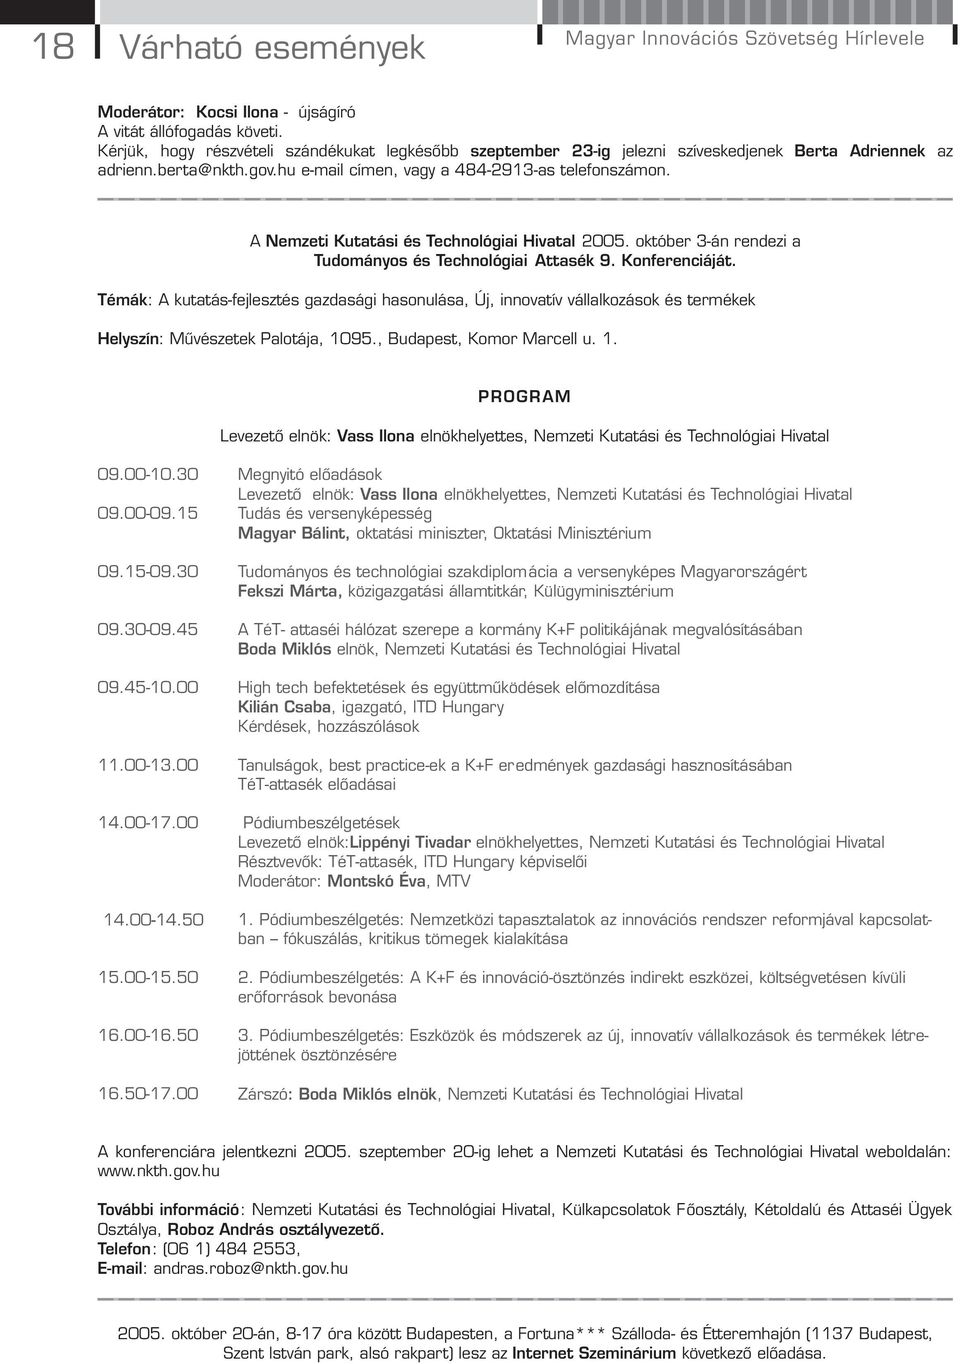 A Nemzeti Kutatási és Technológiai Hivatal 2005. október 3-án rendezi a Tudományos és Technológiai Attasék 9. Konferenciáját.